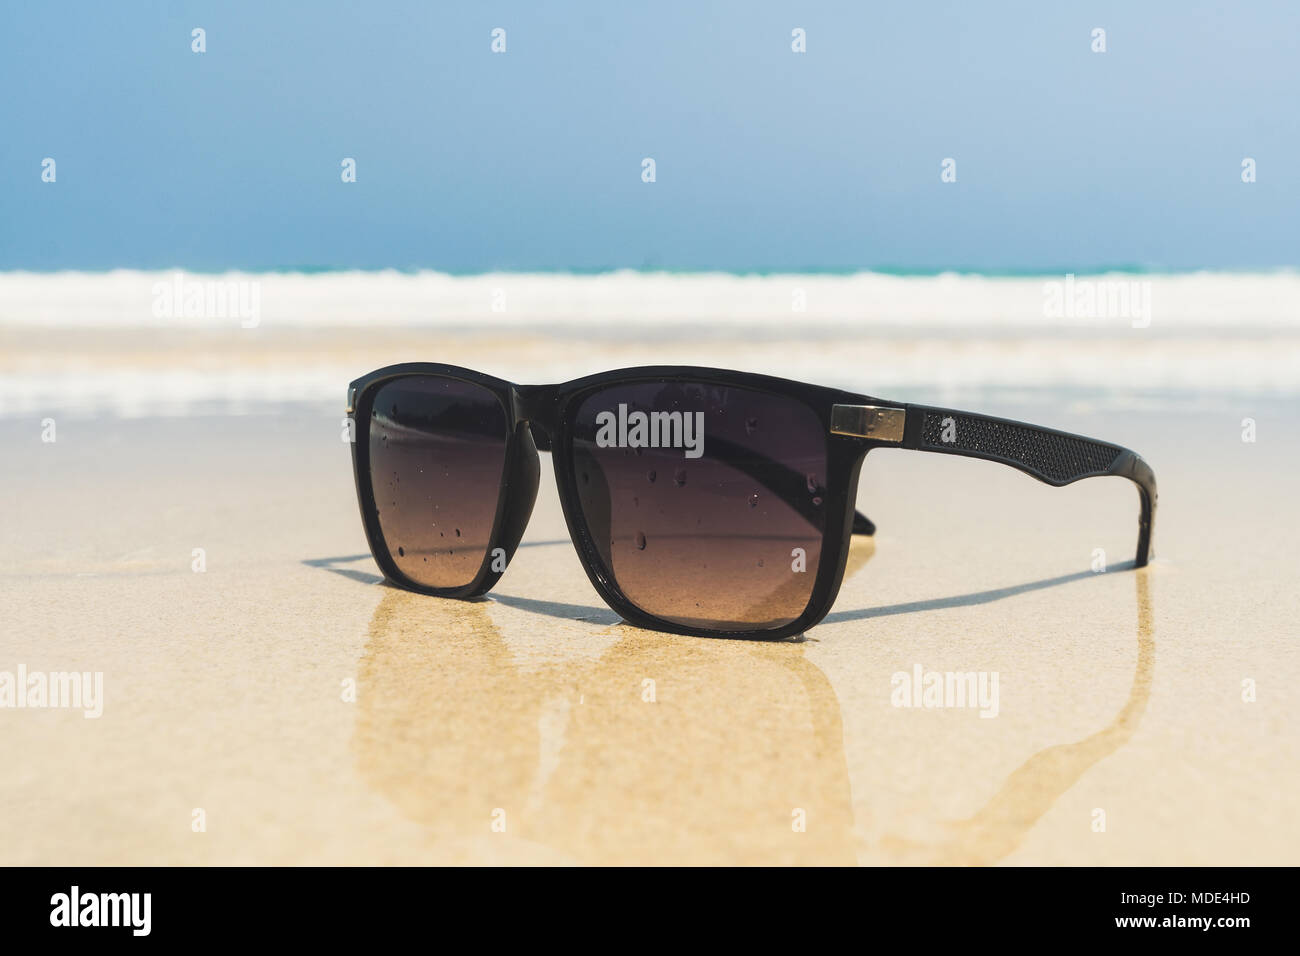 Sonnenbrille liegen auf einem Strand in der Nähe des Meeres. schwarze  Sonnenbrille auf dem Hintergrund der sea wave am Ufer eines tropischen  Insel. Sonnenbrillen sind reflecte Stockfotografie - Alamy